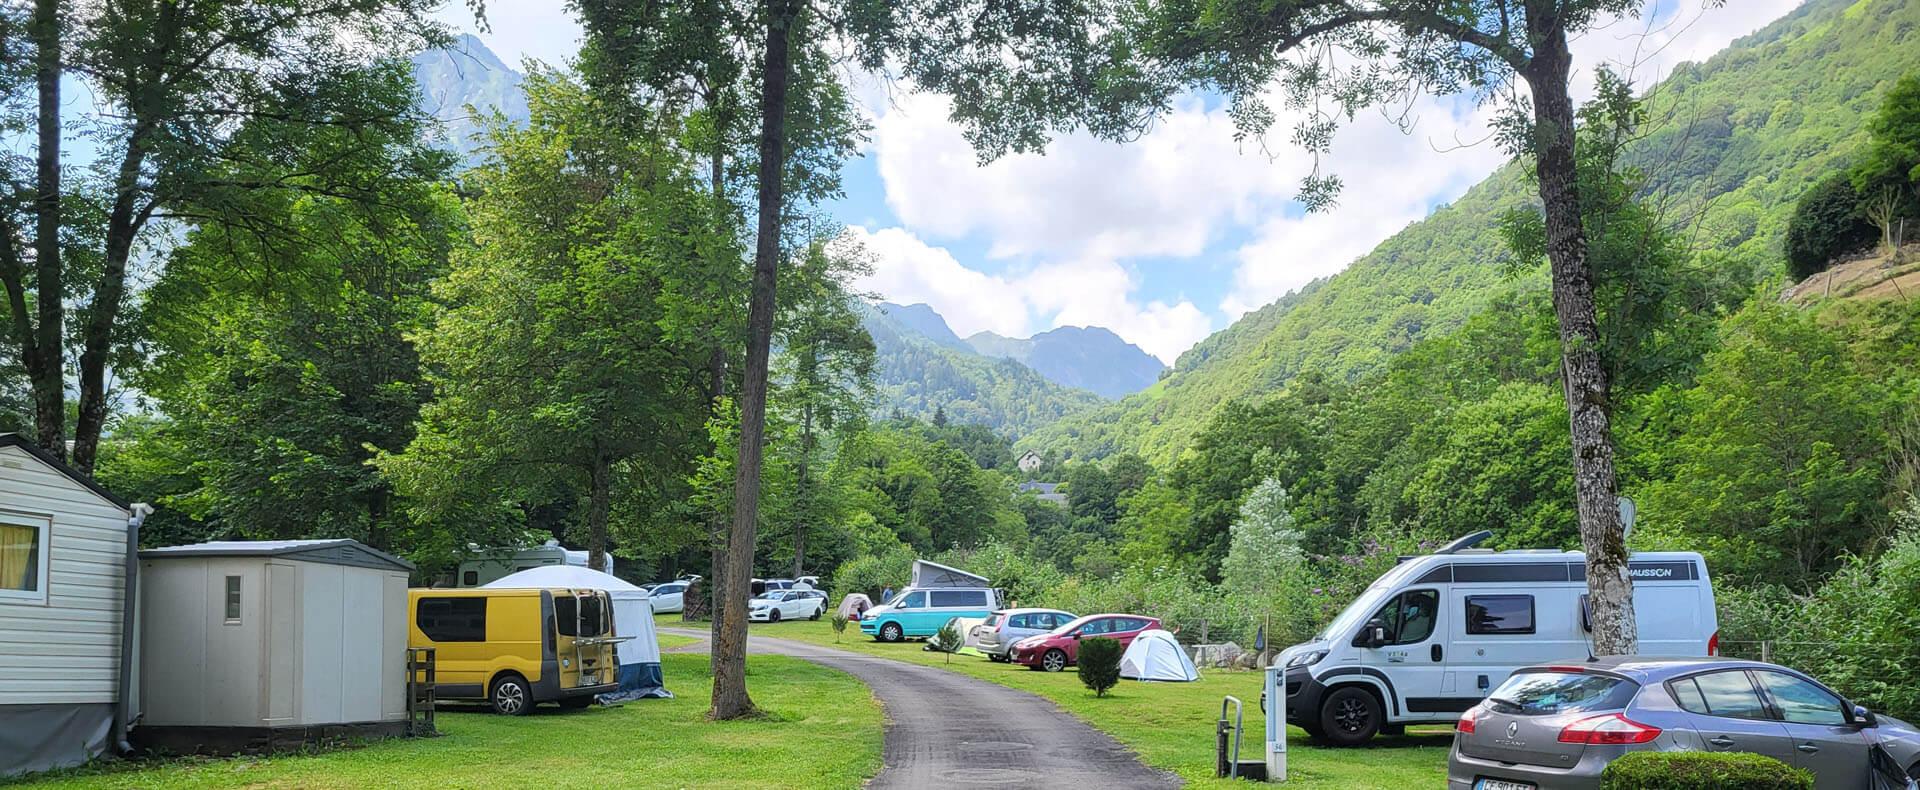 Bienvenue dans notre camping à Cauterets dans les Hautes Pyrénées